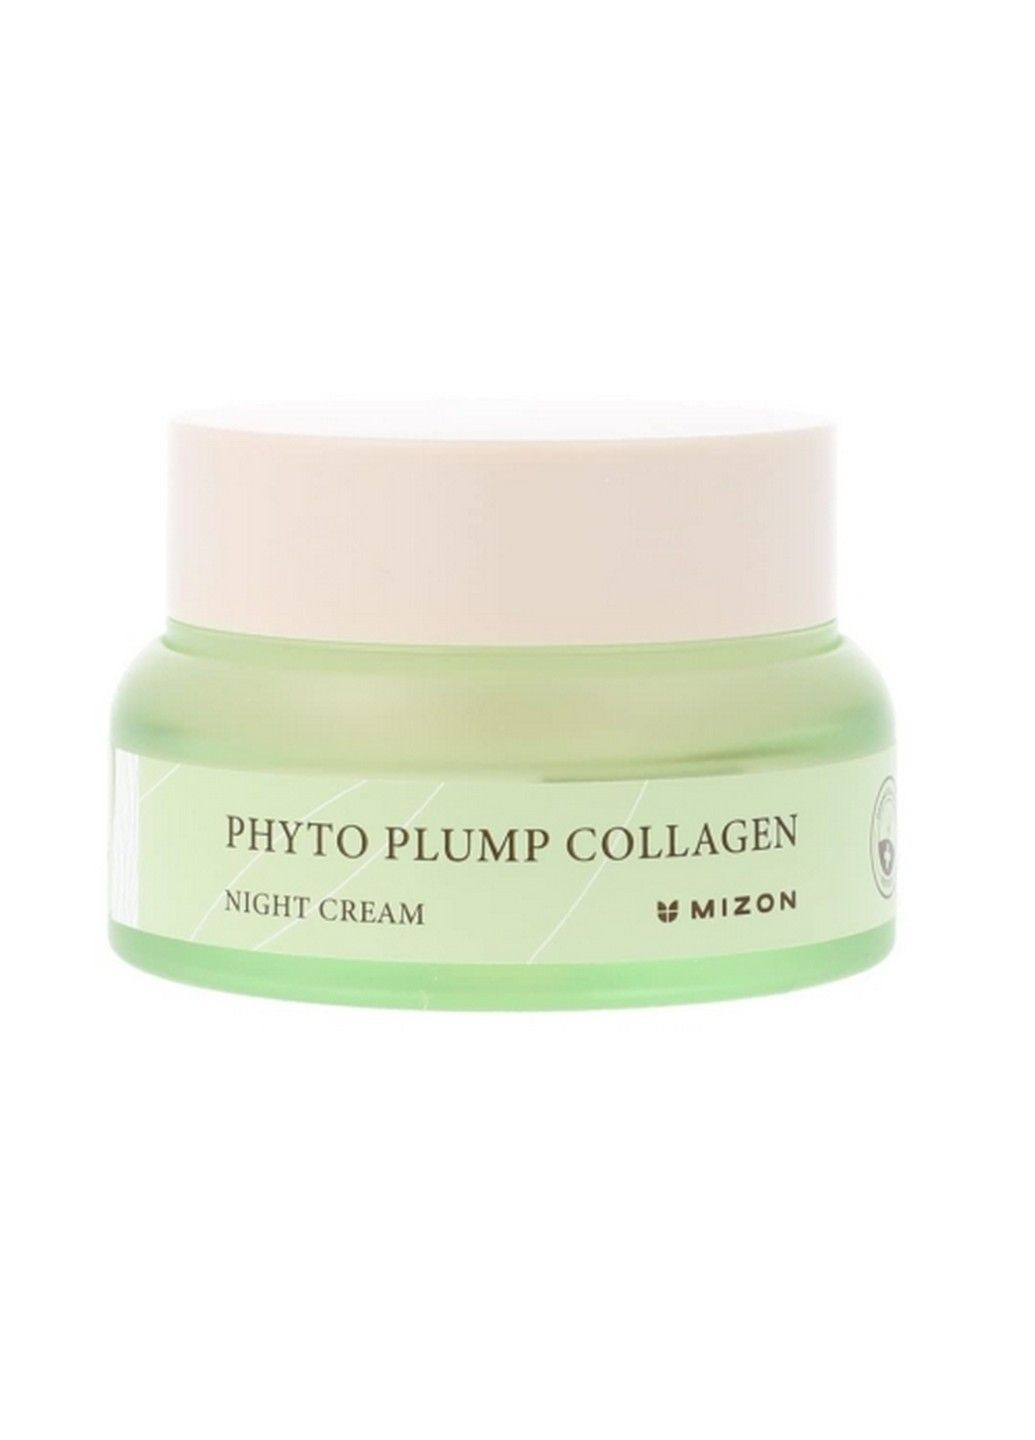 Ночной крем для лица с фитоколлагеном Phyto Plump Collagen Night Cream, 50 мл Mizon (283295697)